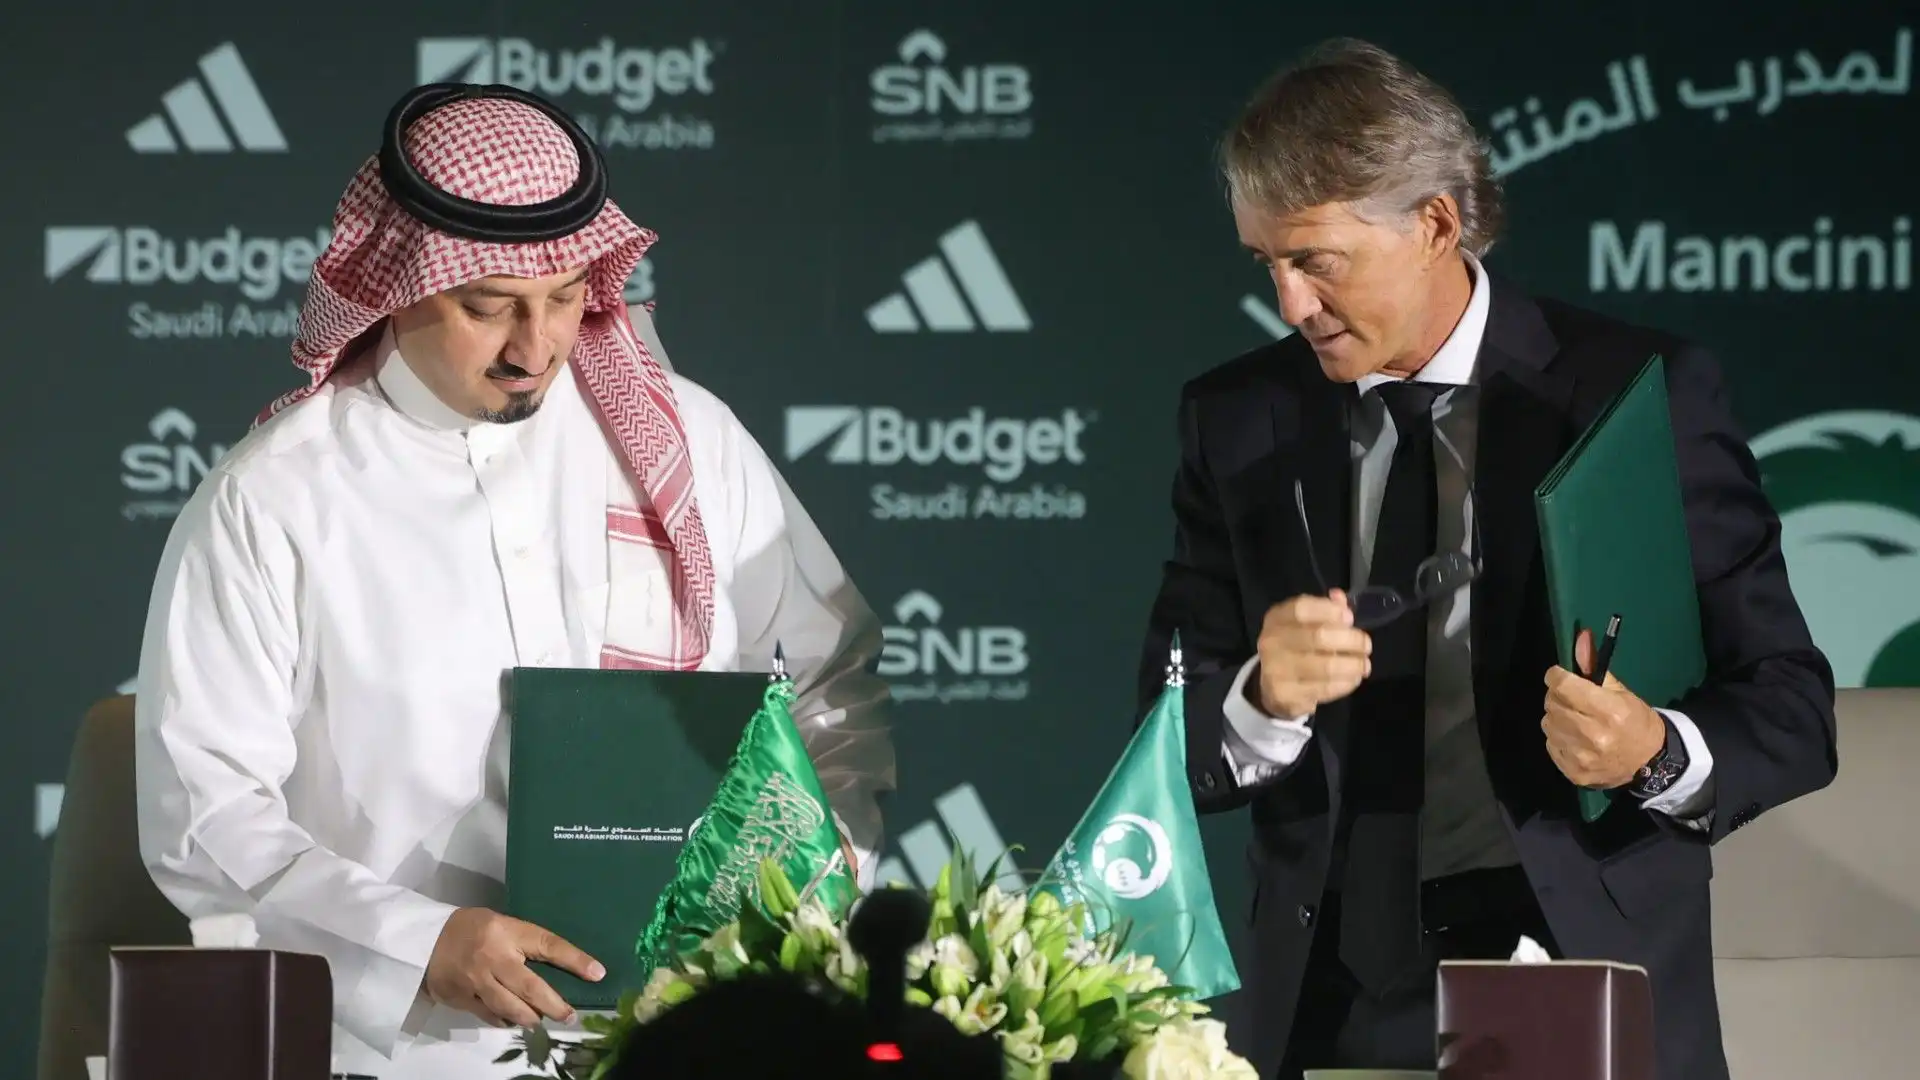 L'allenatore ha accettato la proposta di diventare il nuovo ct della nazionale dell'Arabia Saudita